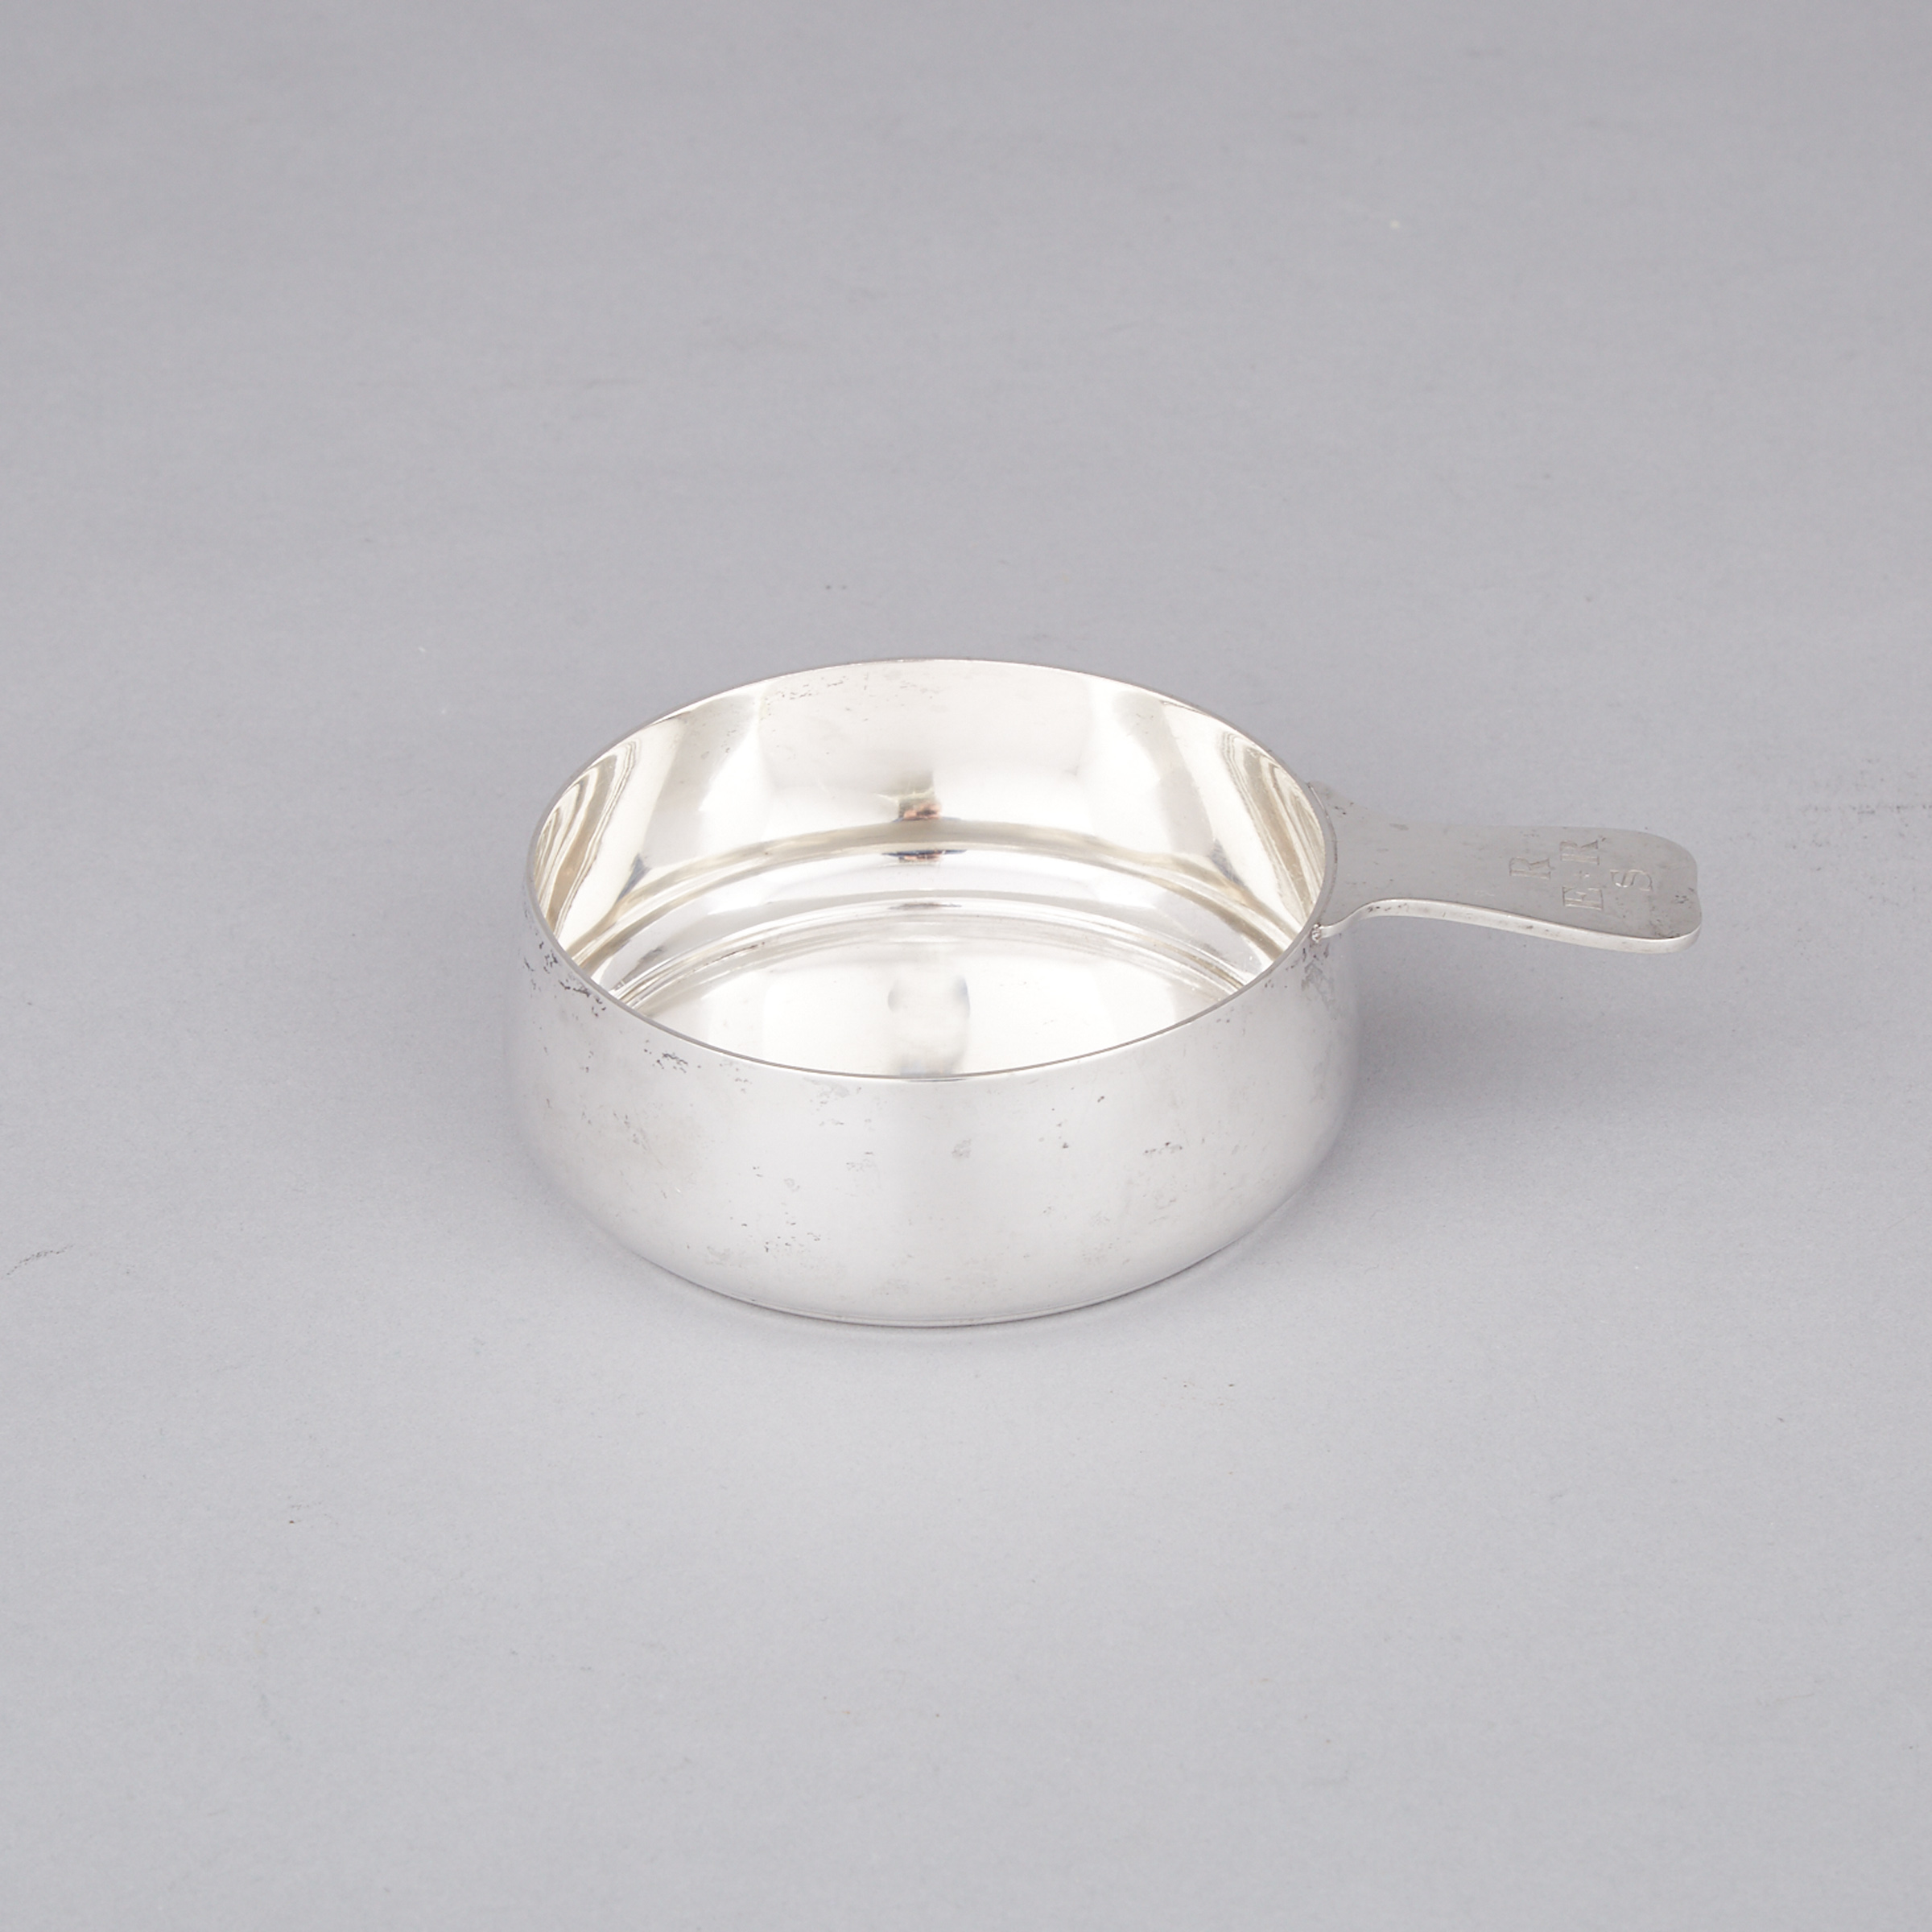 American Silver Porringer, Tiffany & Co., New York, N.Y., 20th century